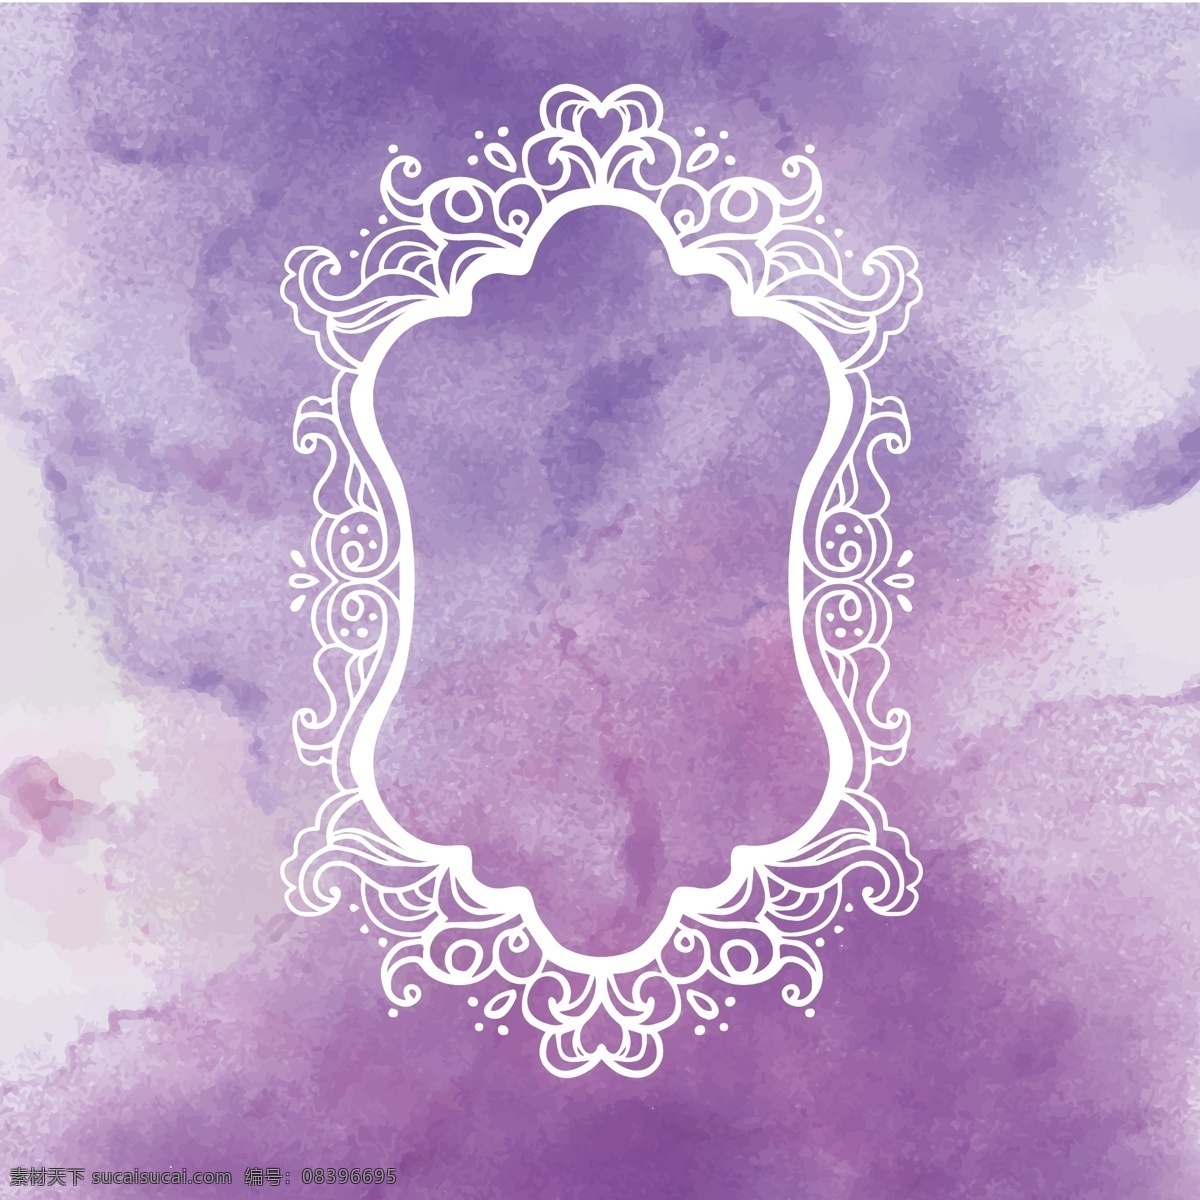 紫色 水彩 背景 标签 彩色 花边 水彩背景 印迹 矢量 水彩素材 白色花边